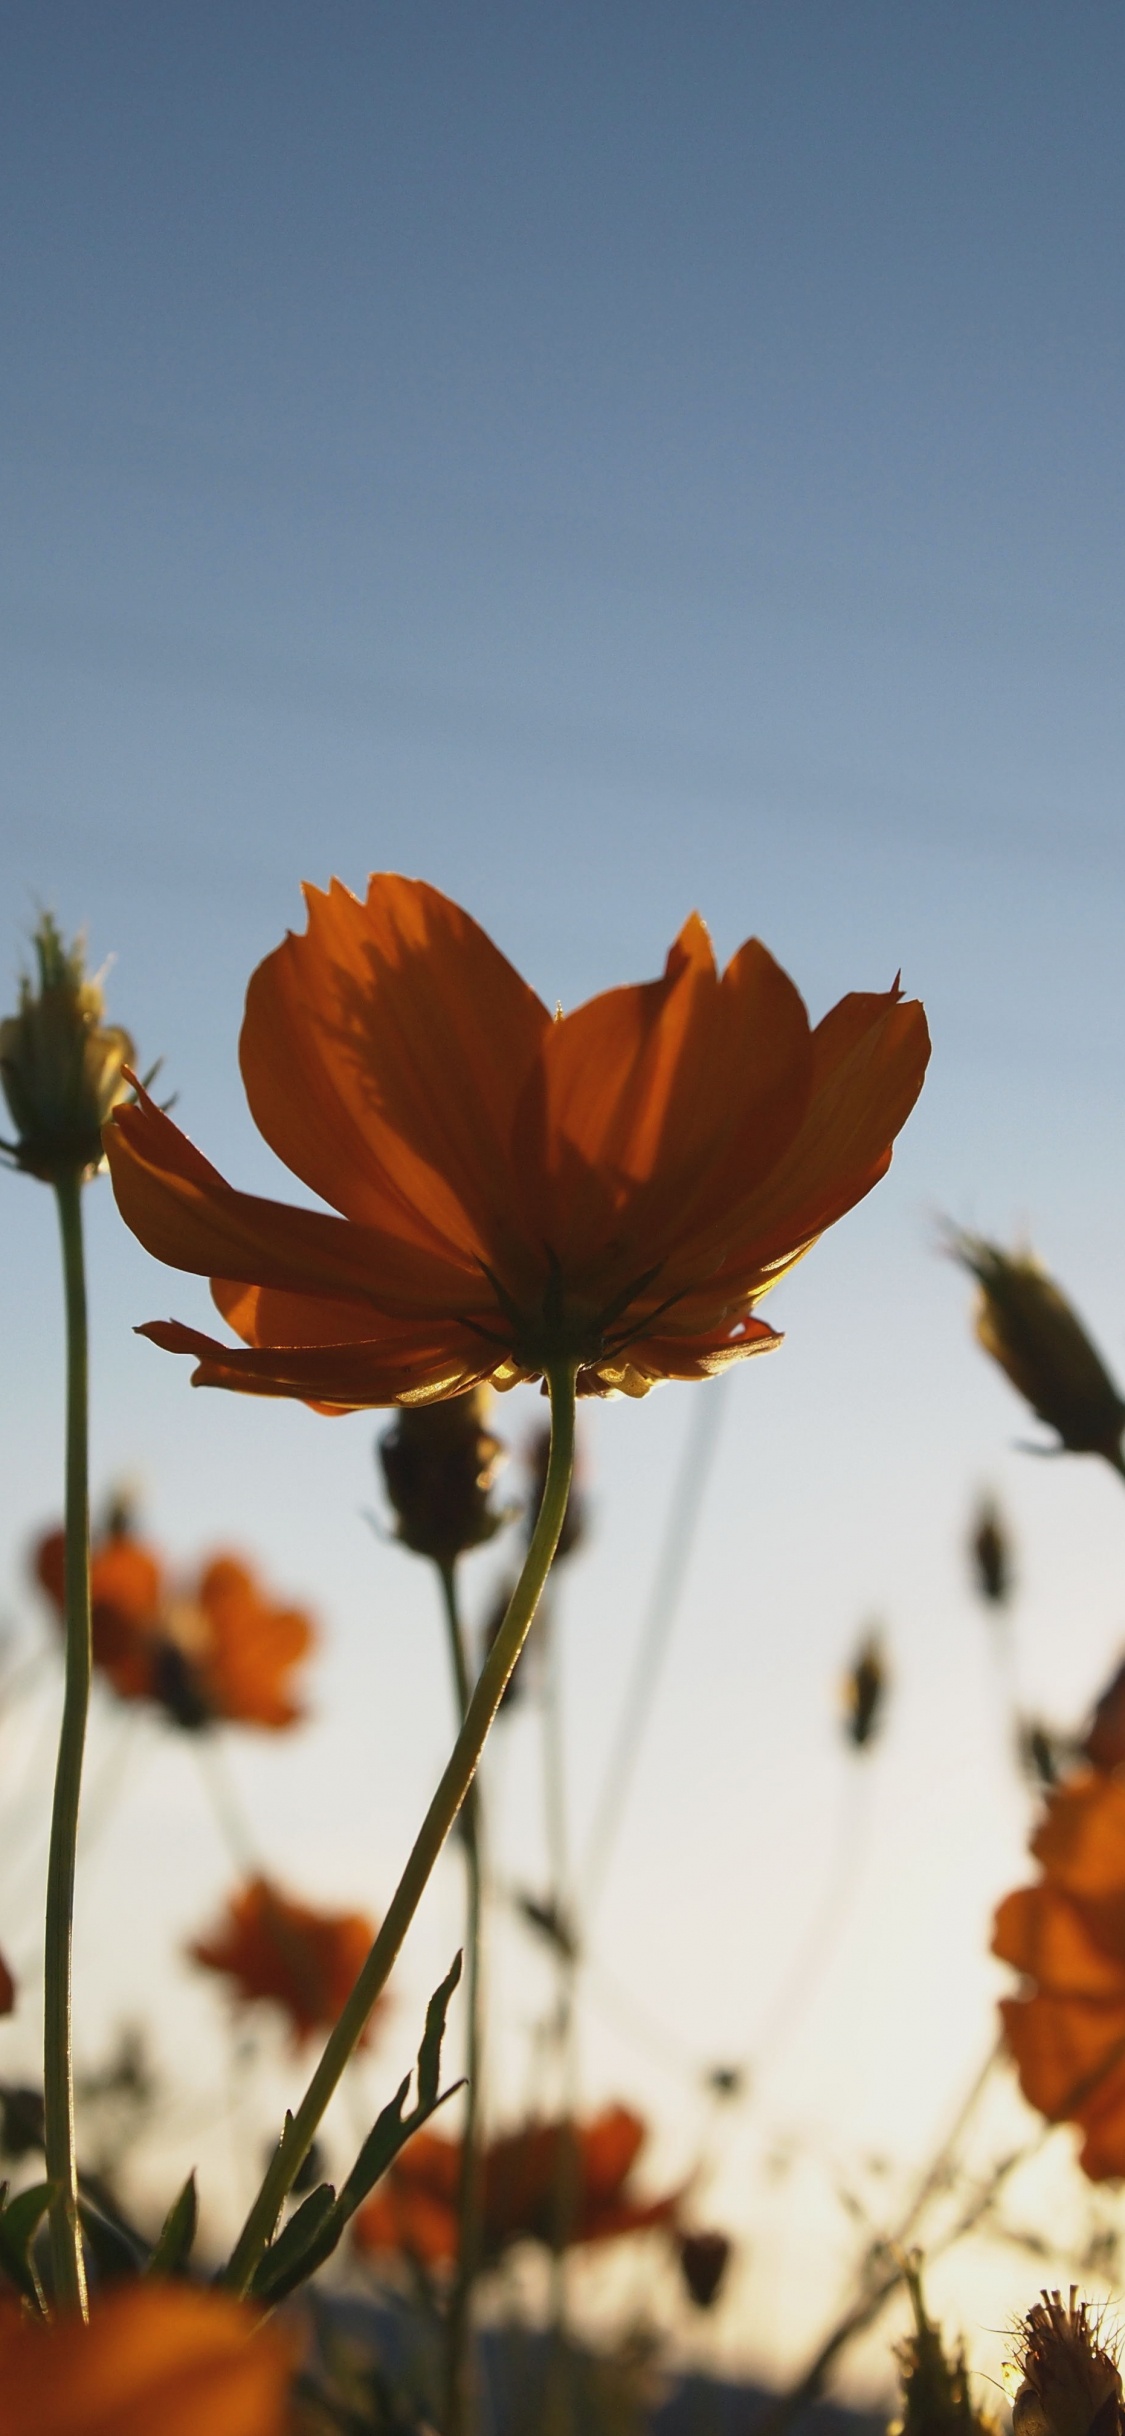 Orange Flower in Tilt Shift Lens. Wallpaper in 1125x2436 Resolution